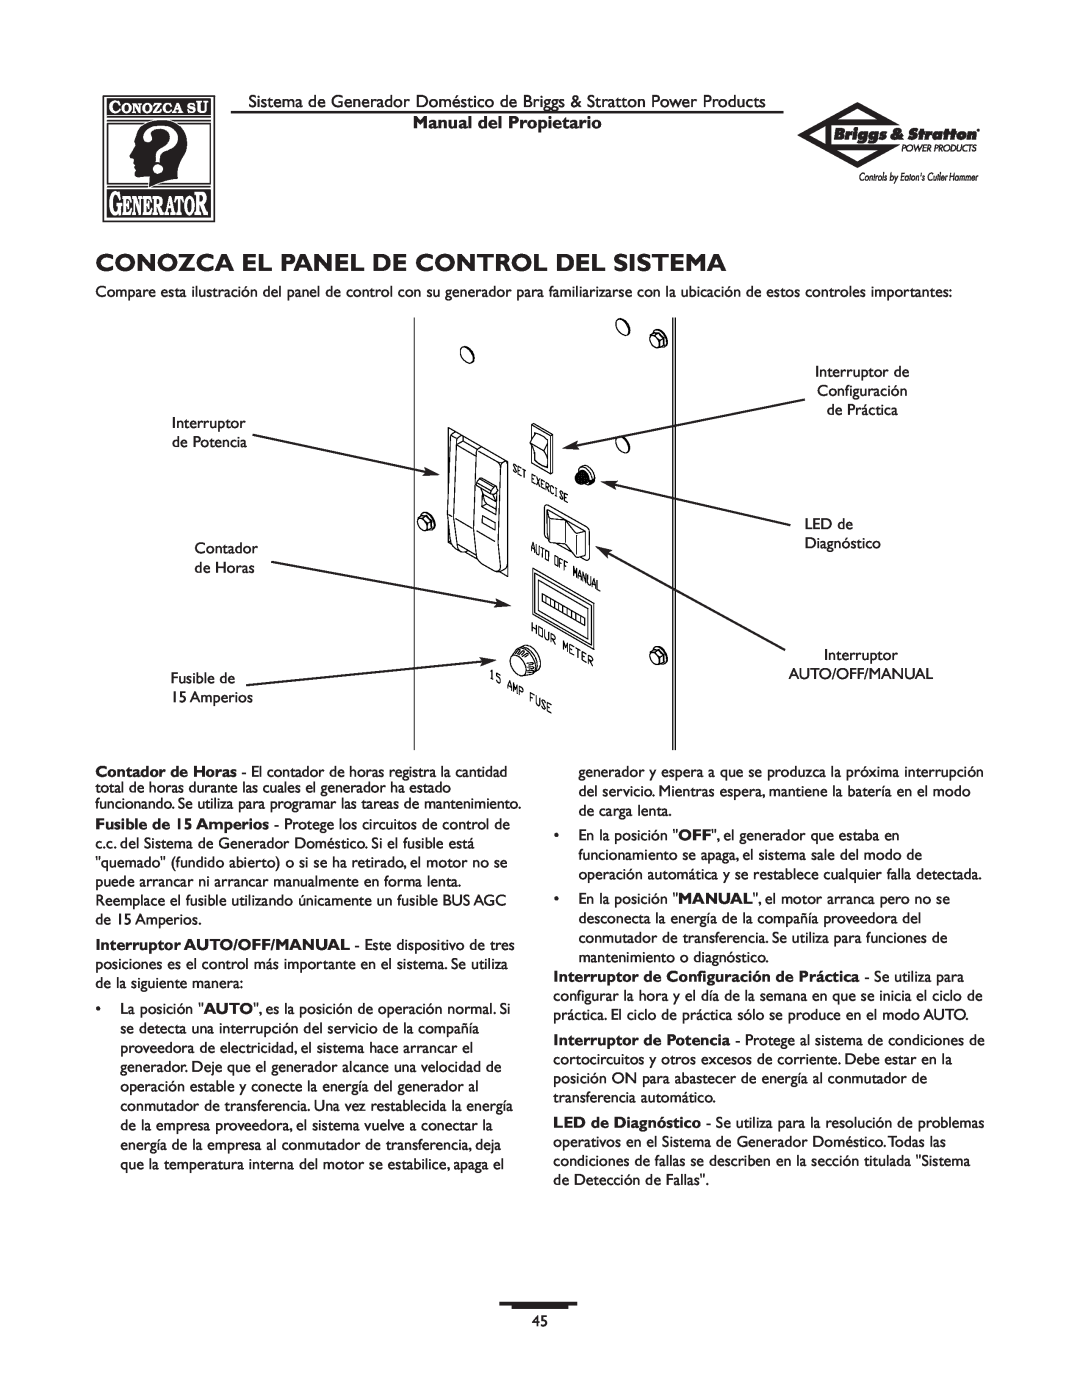 Briggs & Stratton 190839GS owner manual Conozca El Panel De Control Del Sistema, Manual del Propietario 